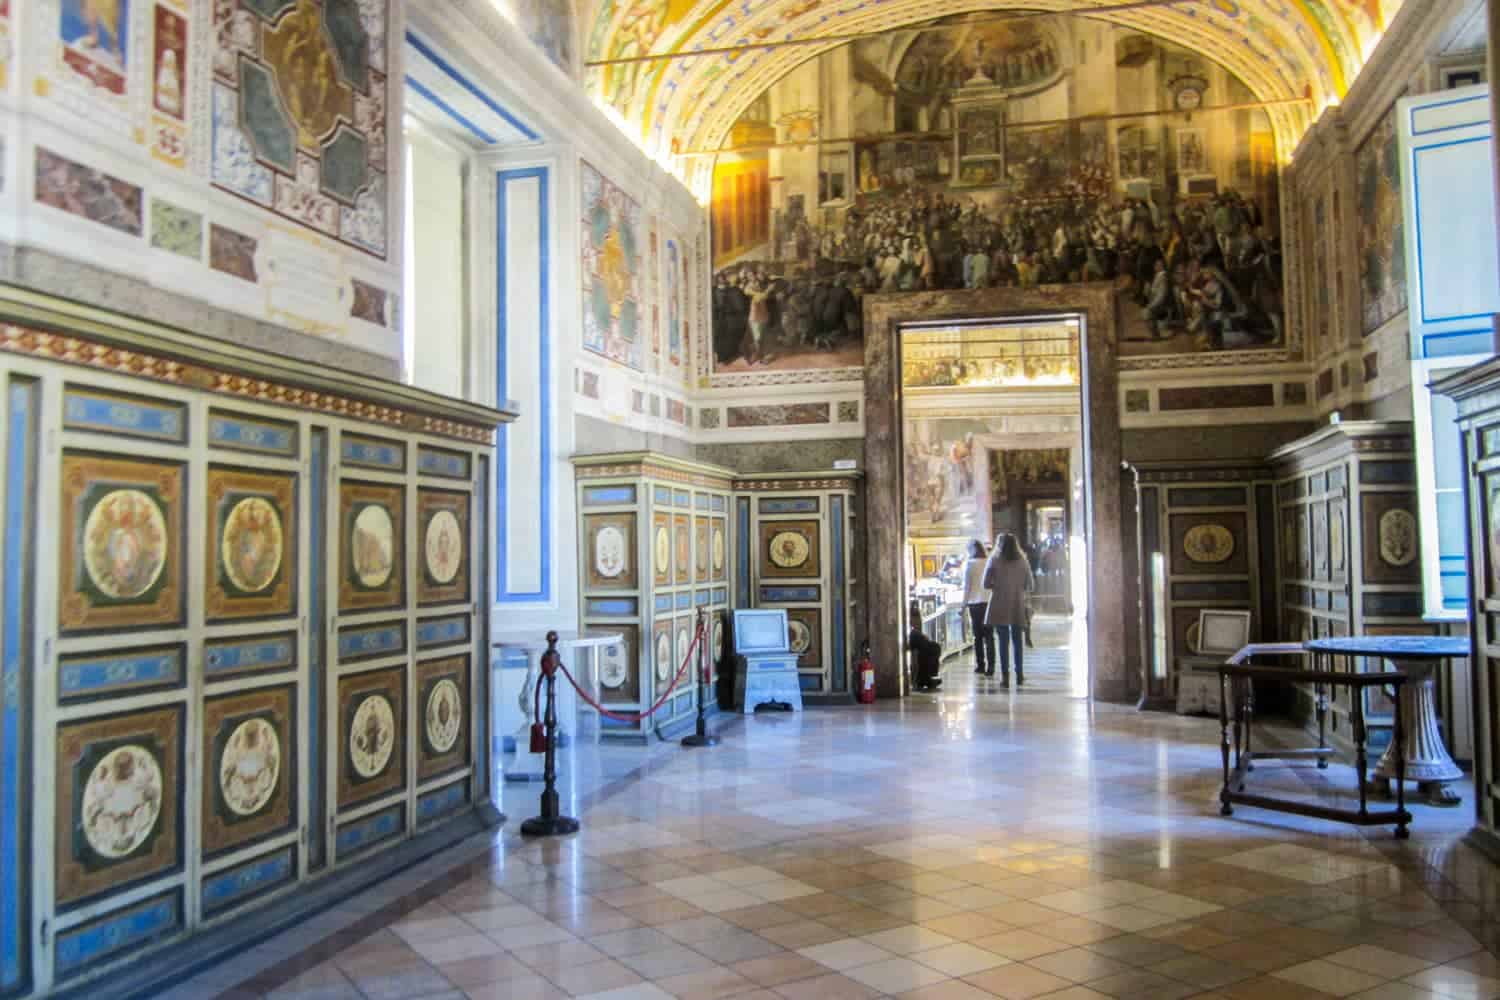 Hallways in the Vatican Museum, Rome